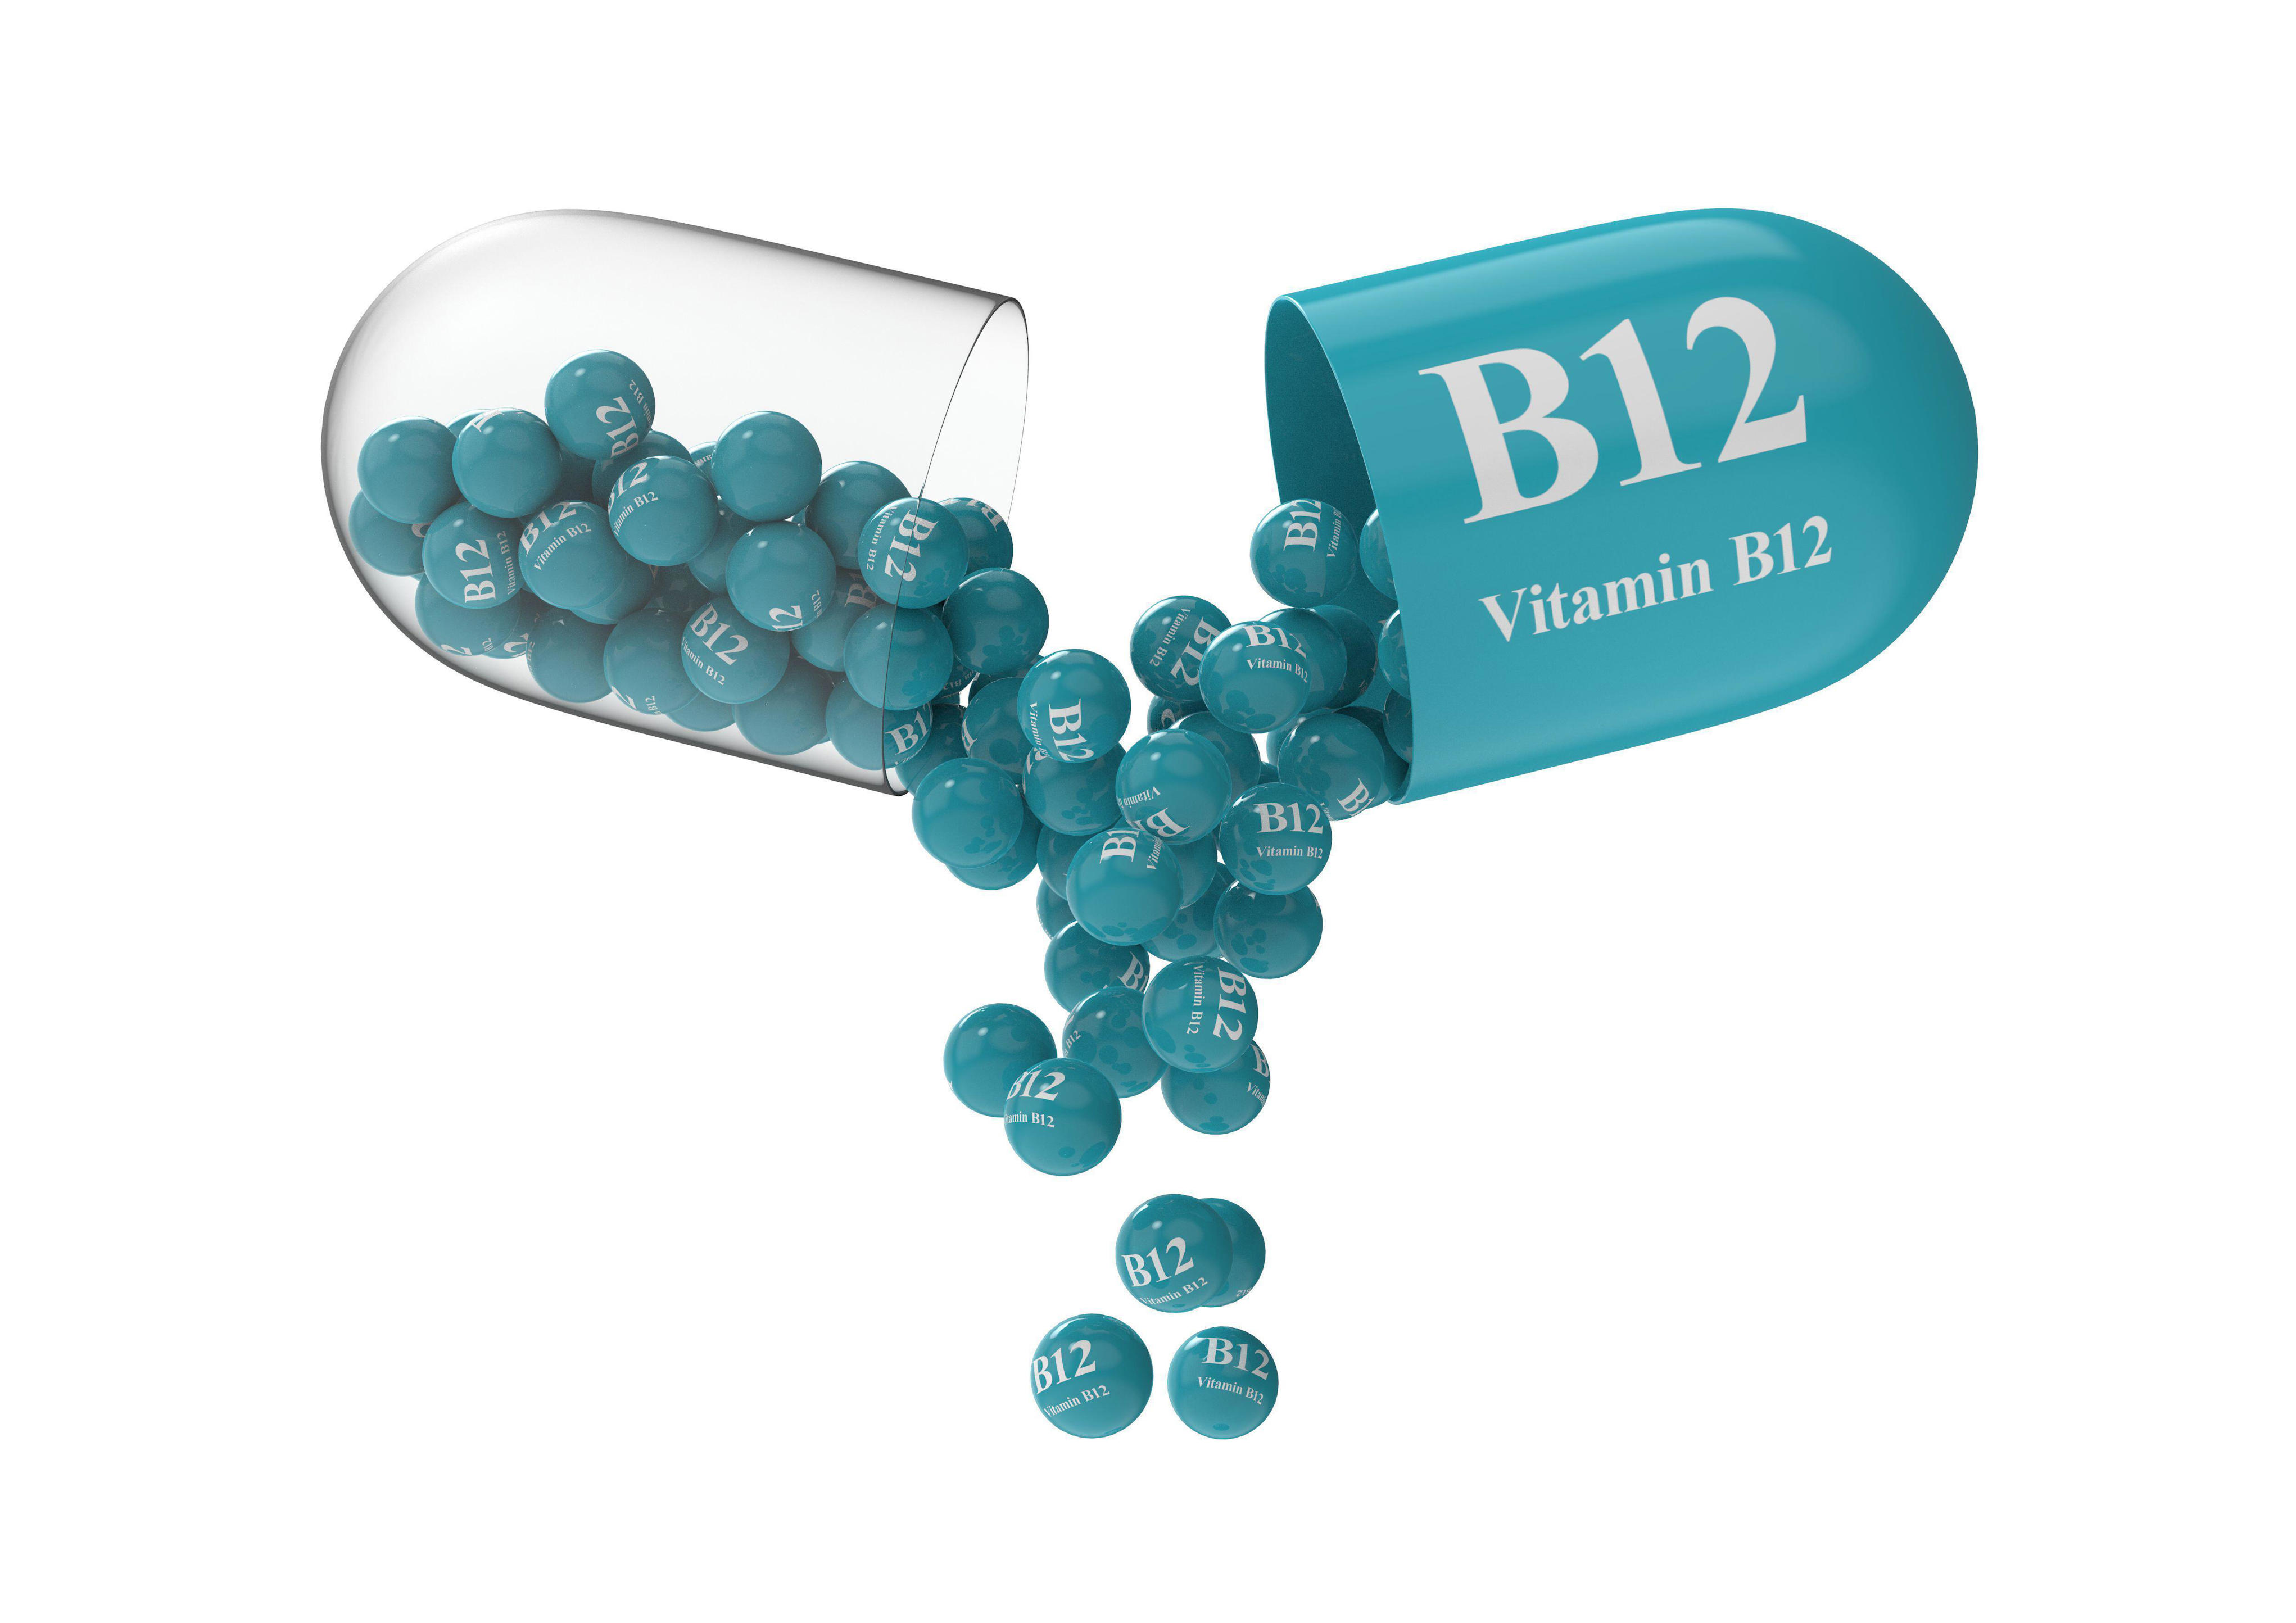 sedef batı b12 vitamini takviyesi yorgunluğa iyi gelir mi, hafızayı güçlendirir mi? kimler kullanmalı? yan etkileri neler?